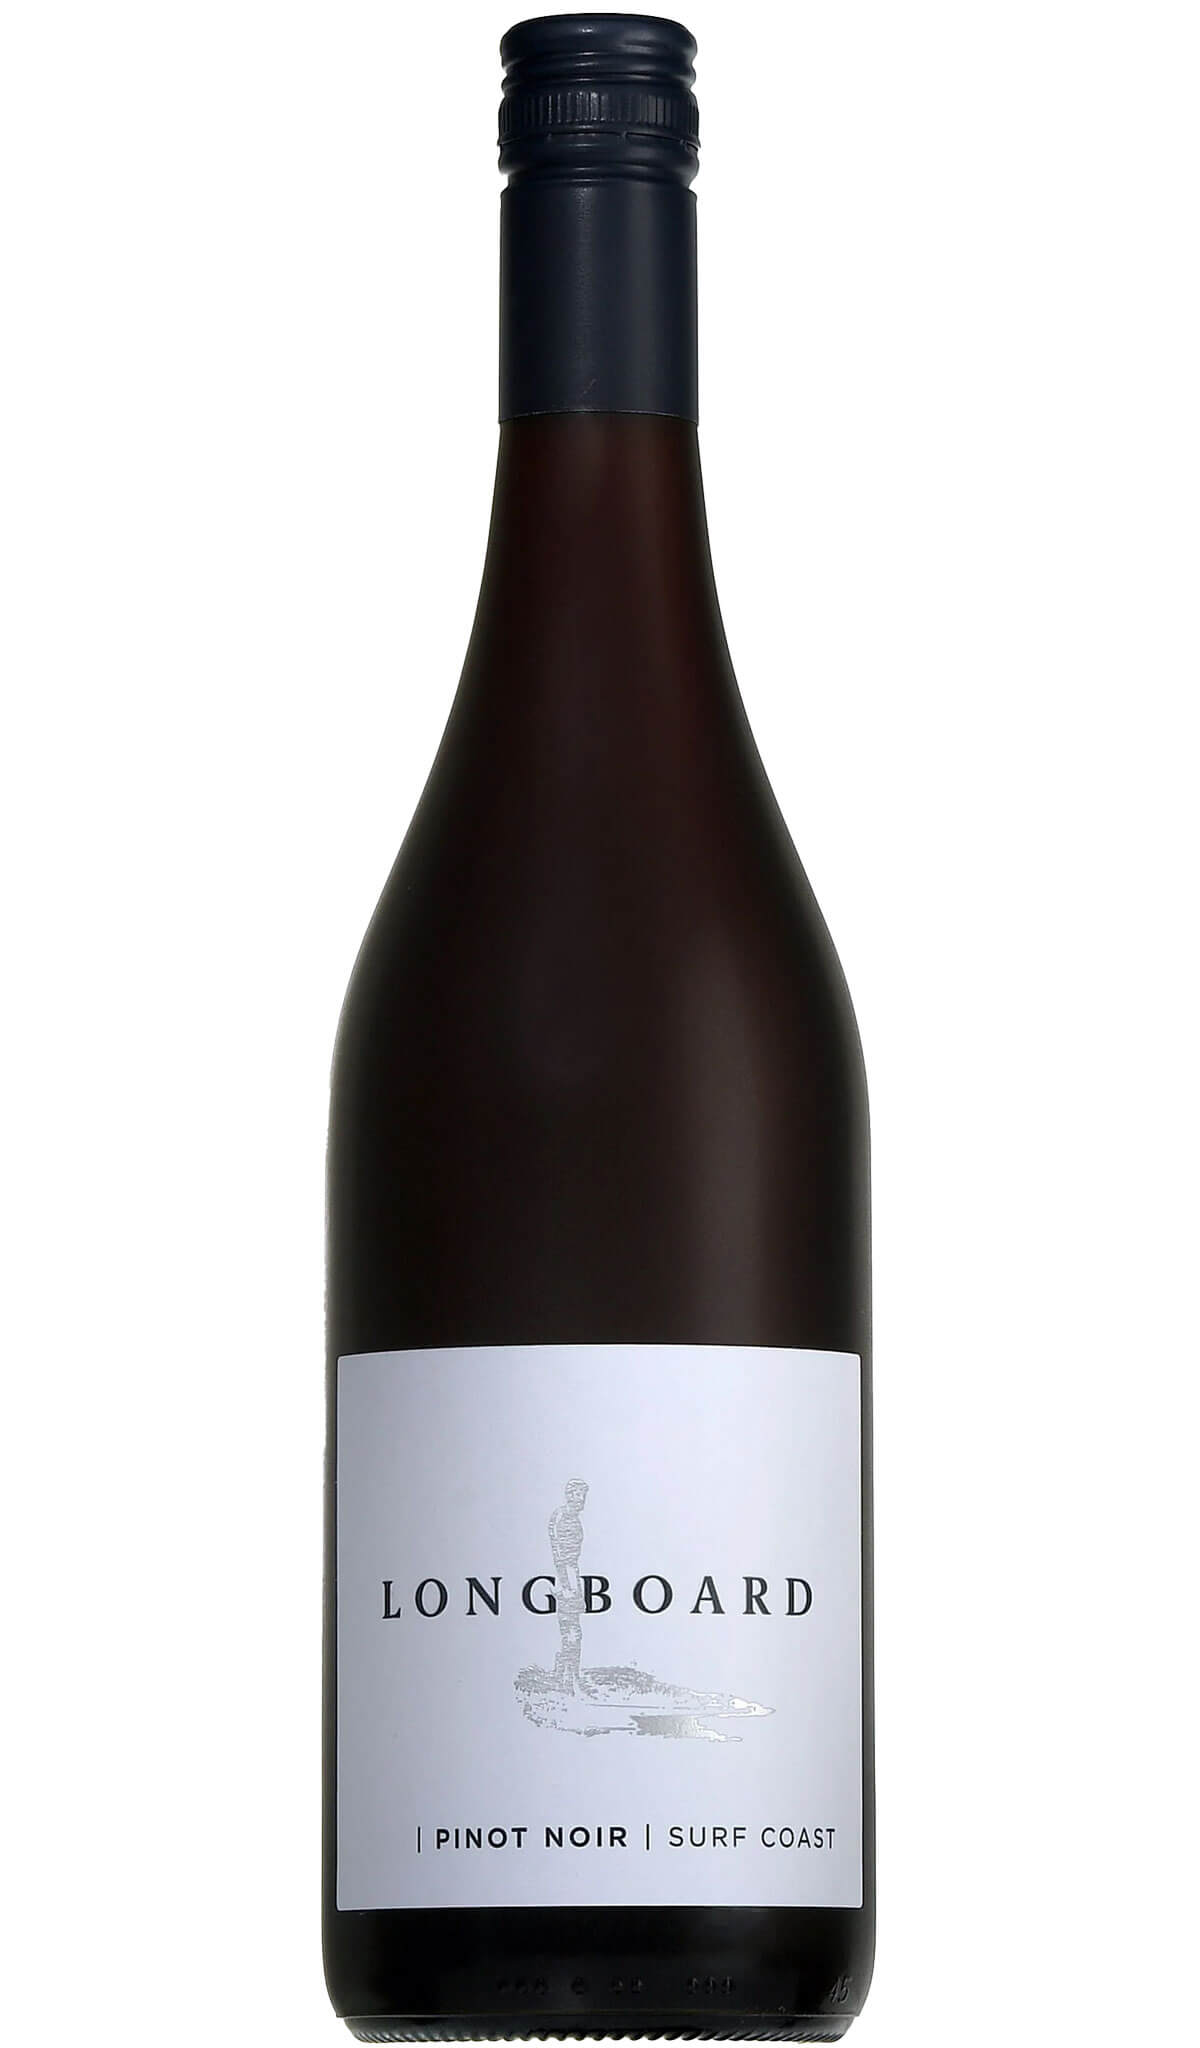 Direct　Noir　Wine　–　Estate　Bellbrae　Pinot　Coast)　Surf　Longboard　(Geelong　2021　Sellers